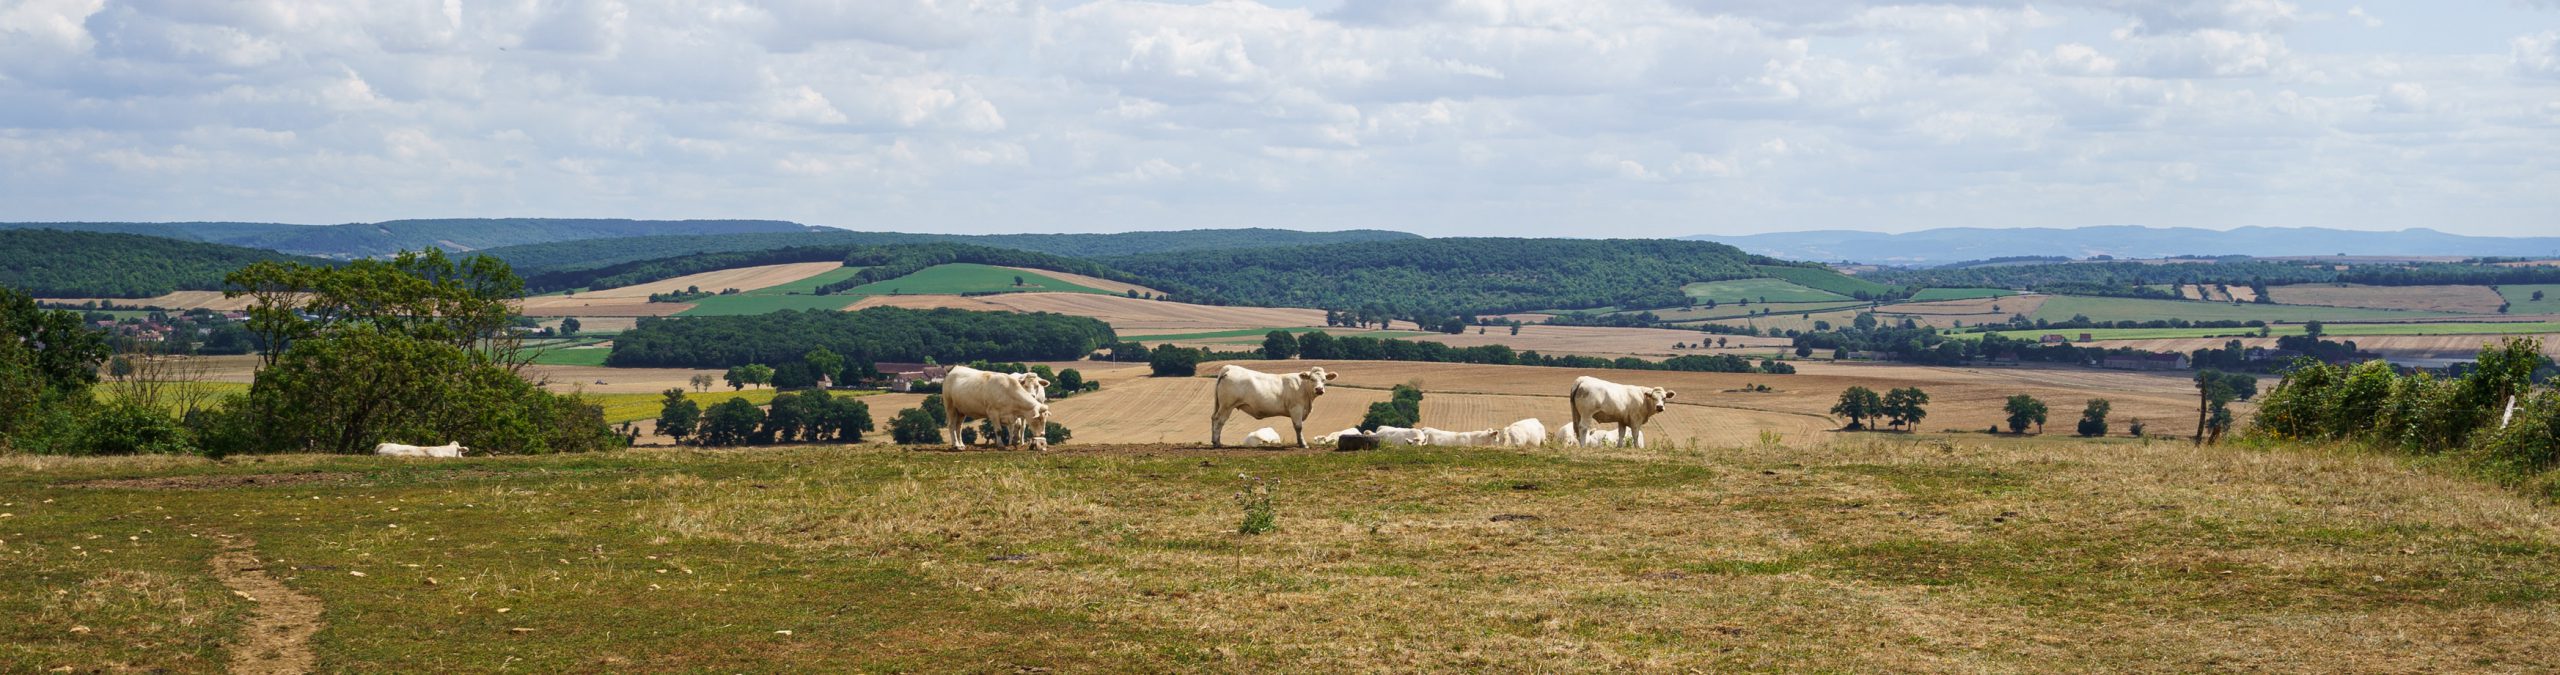 Vaches dans un pré, paysage du bocage nivernais.